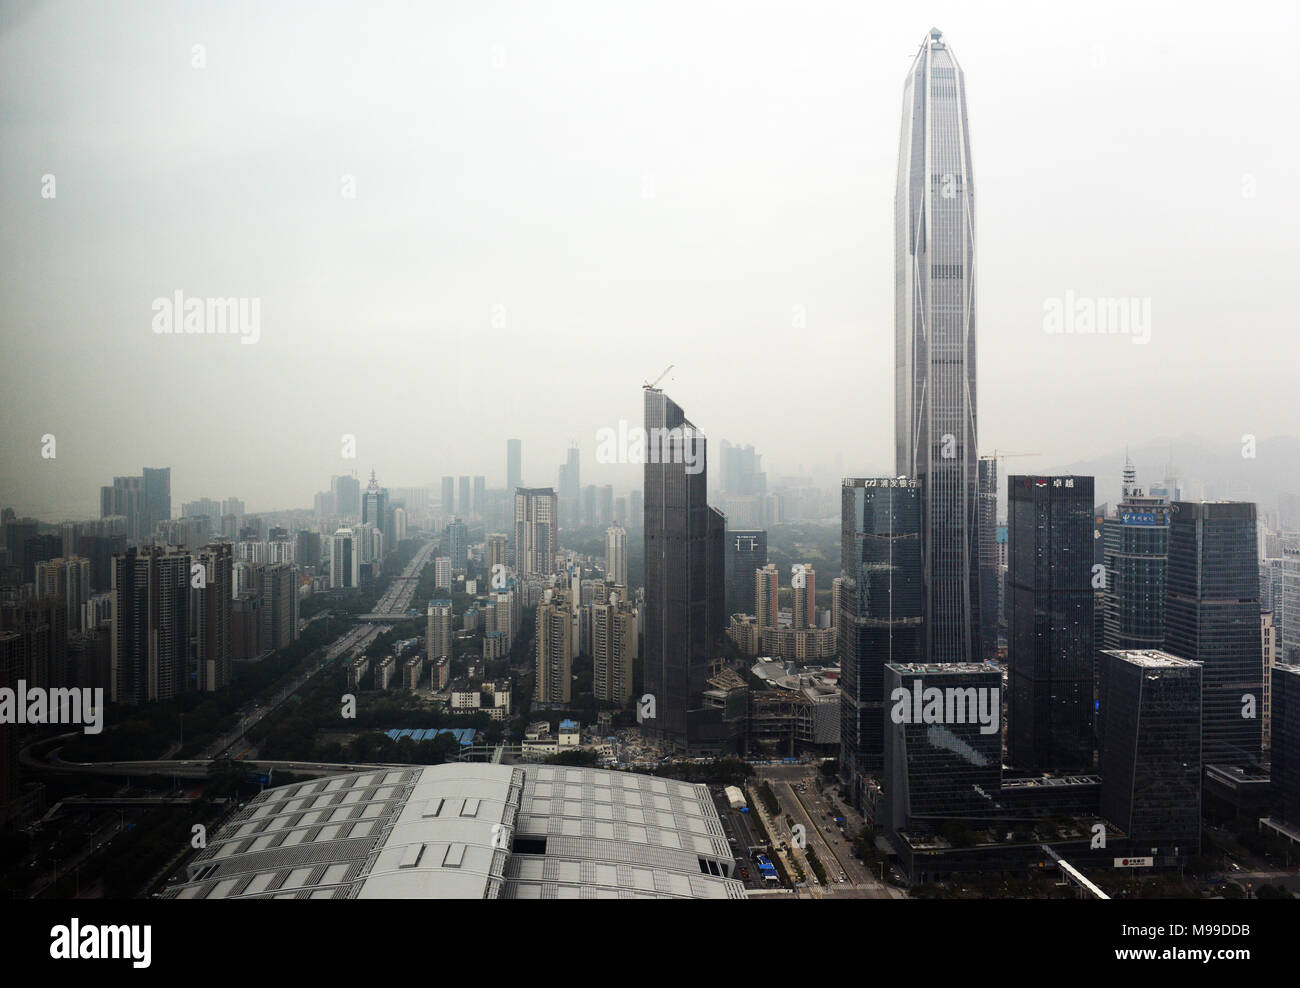 Ping An tower in Futian, Shenzhen Stock Photo - Alamy